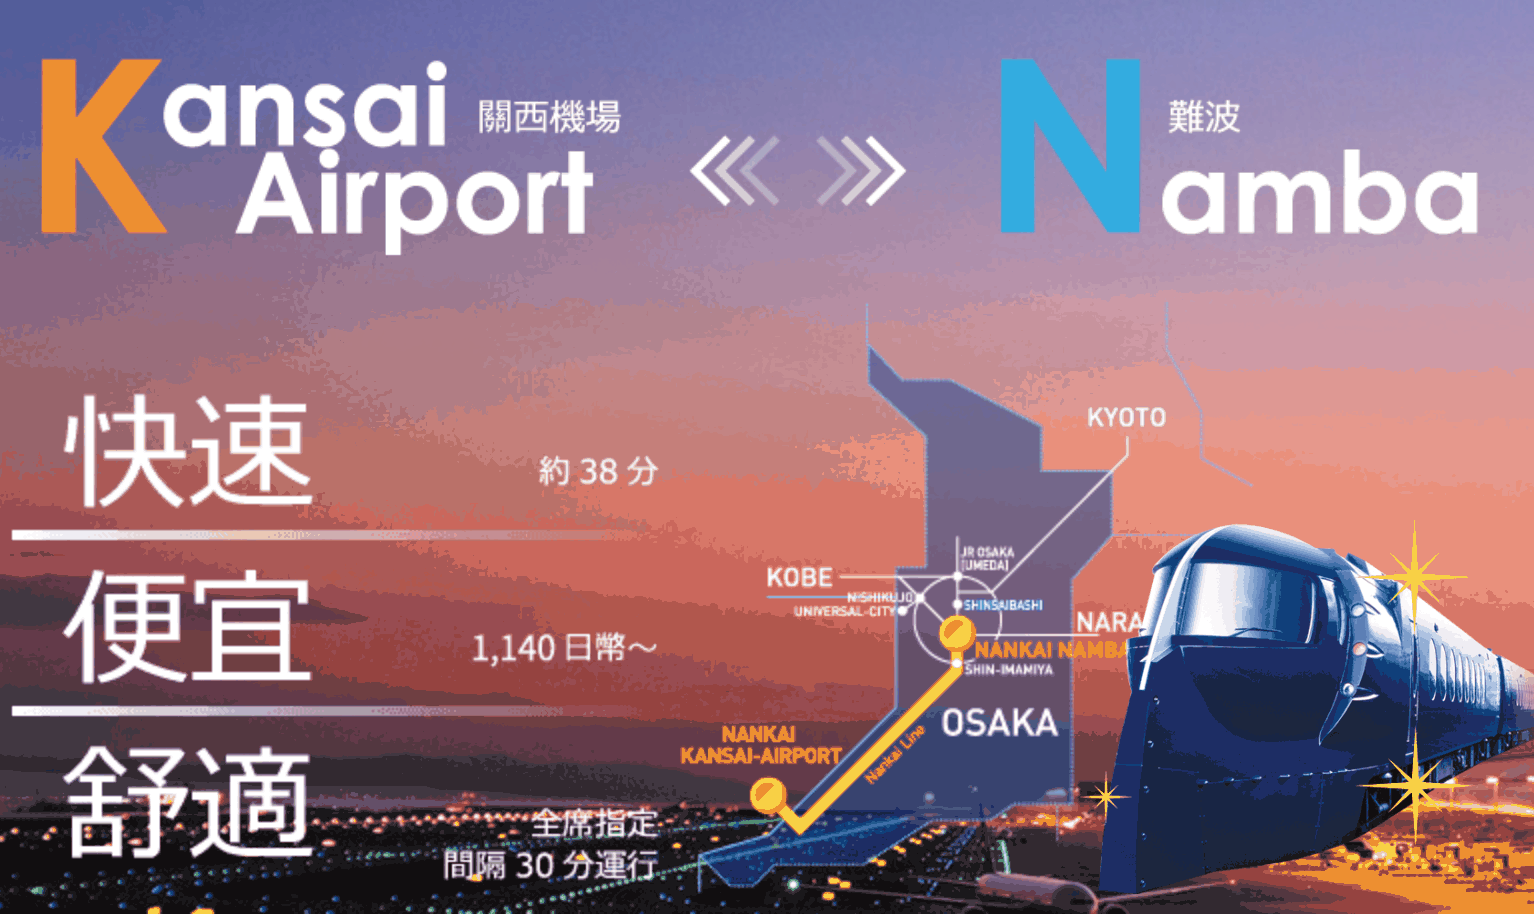 特急rapi:t： 關西機場到京都 關西機場到大阪